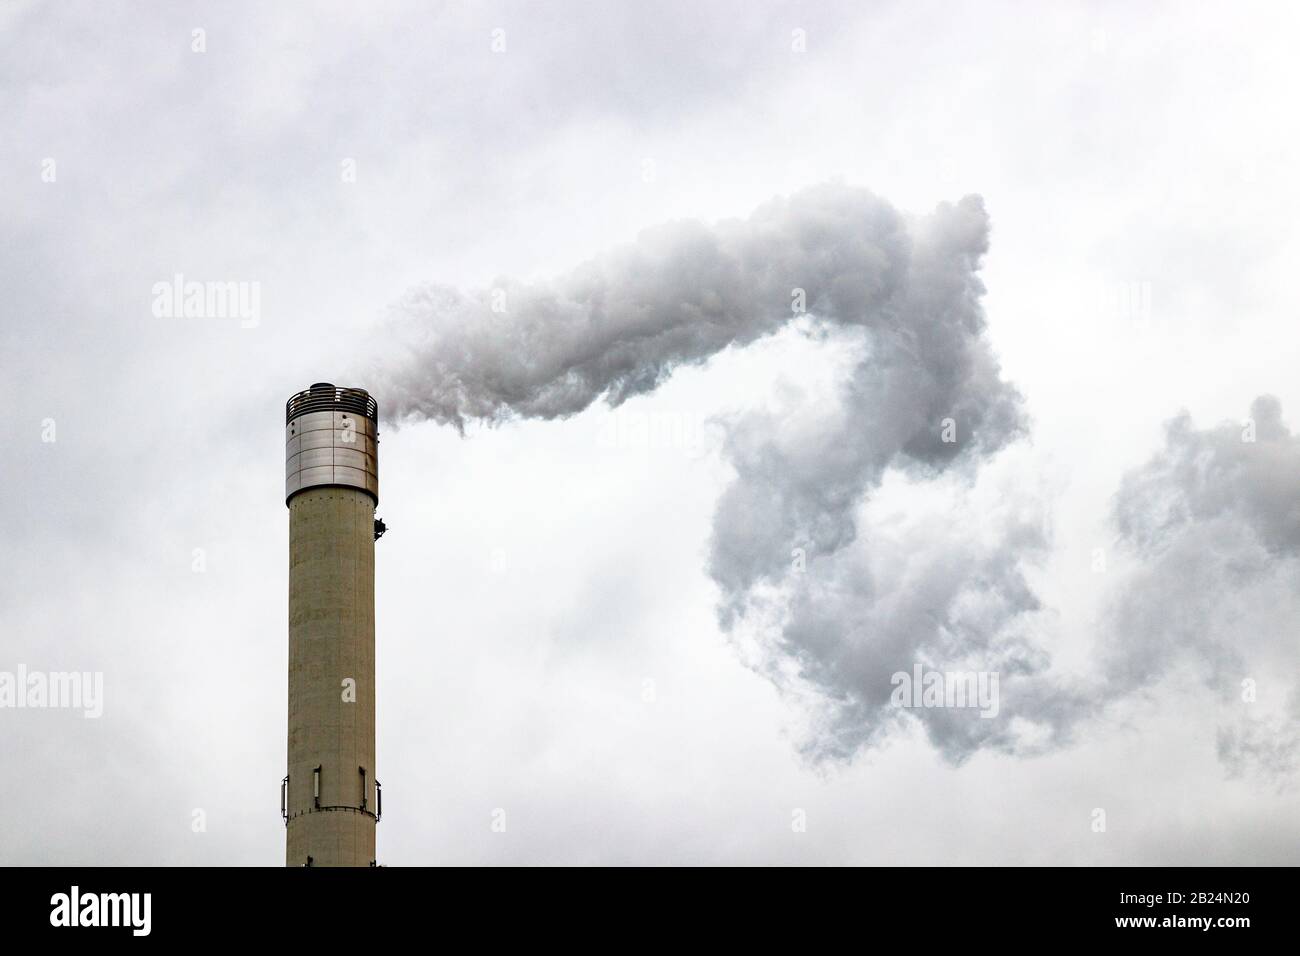 La grande cheminée émet des gaz dans l'atmosphère, provoquant la pollution de l'air. Gris, ciel nuageux. Banque D'Images